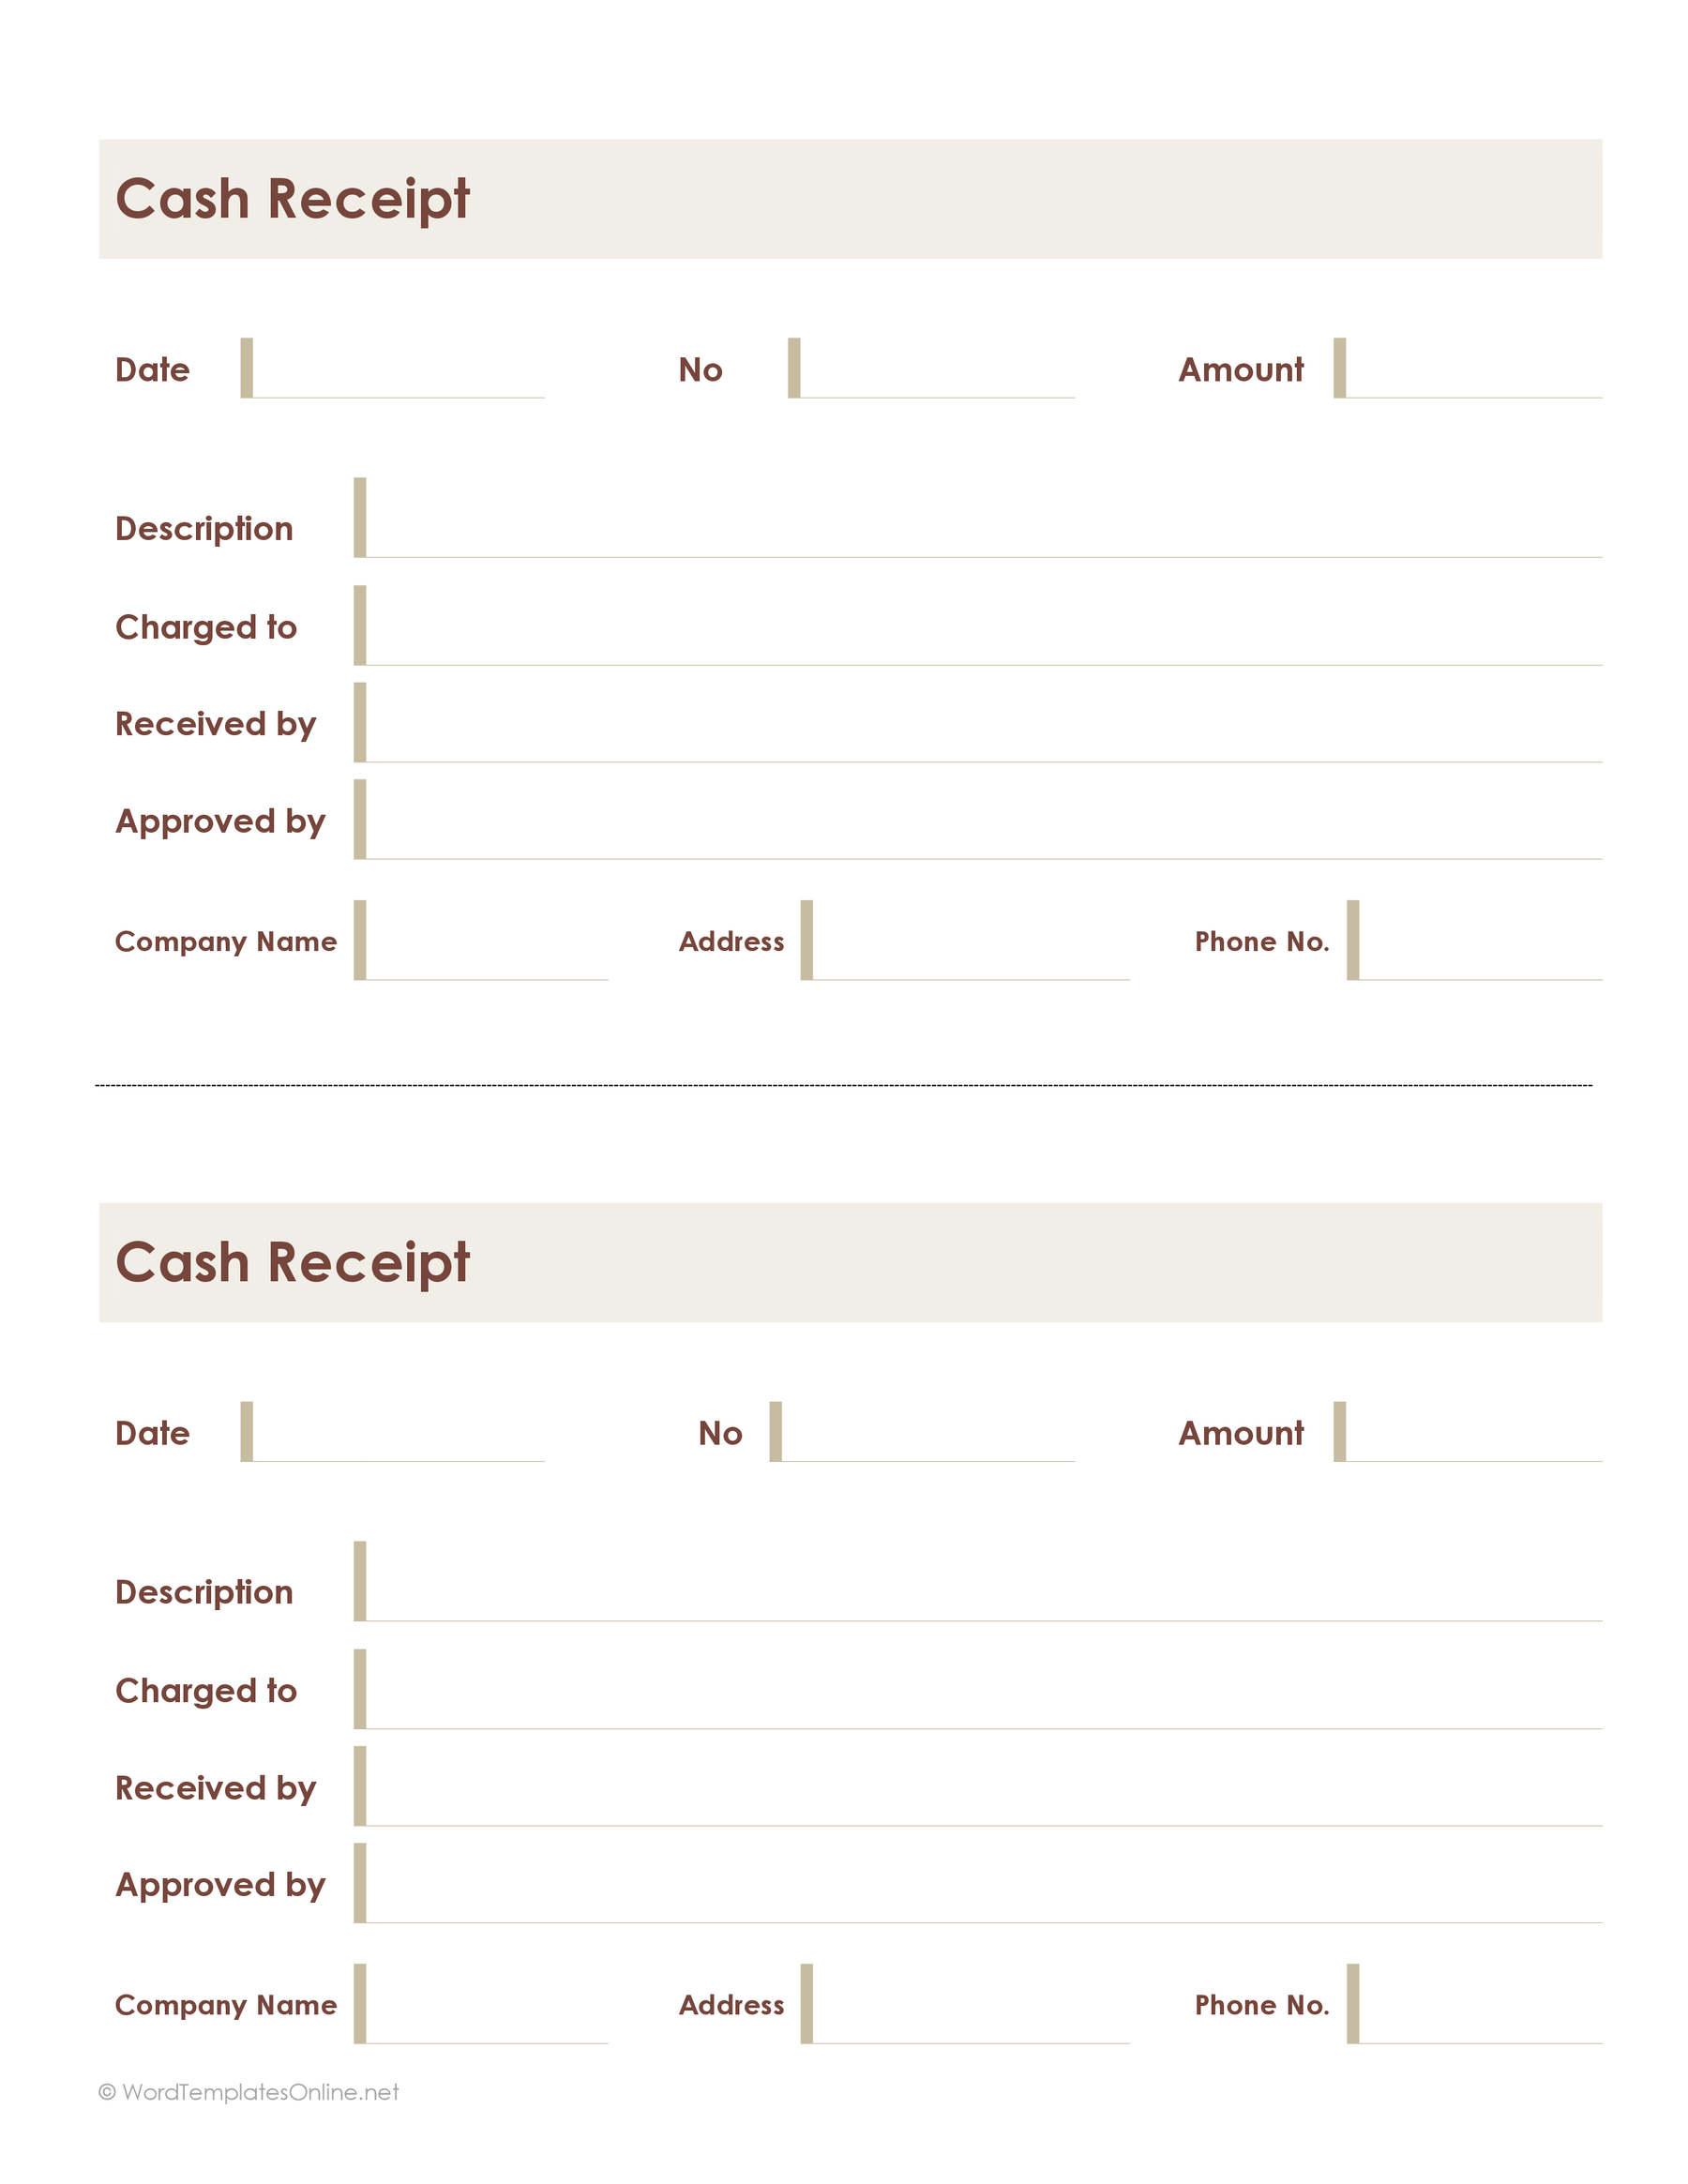 Simple Cash Receipt Template from www.wordtemplatesonline.net